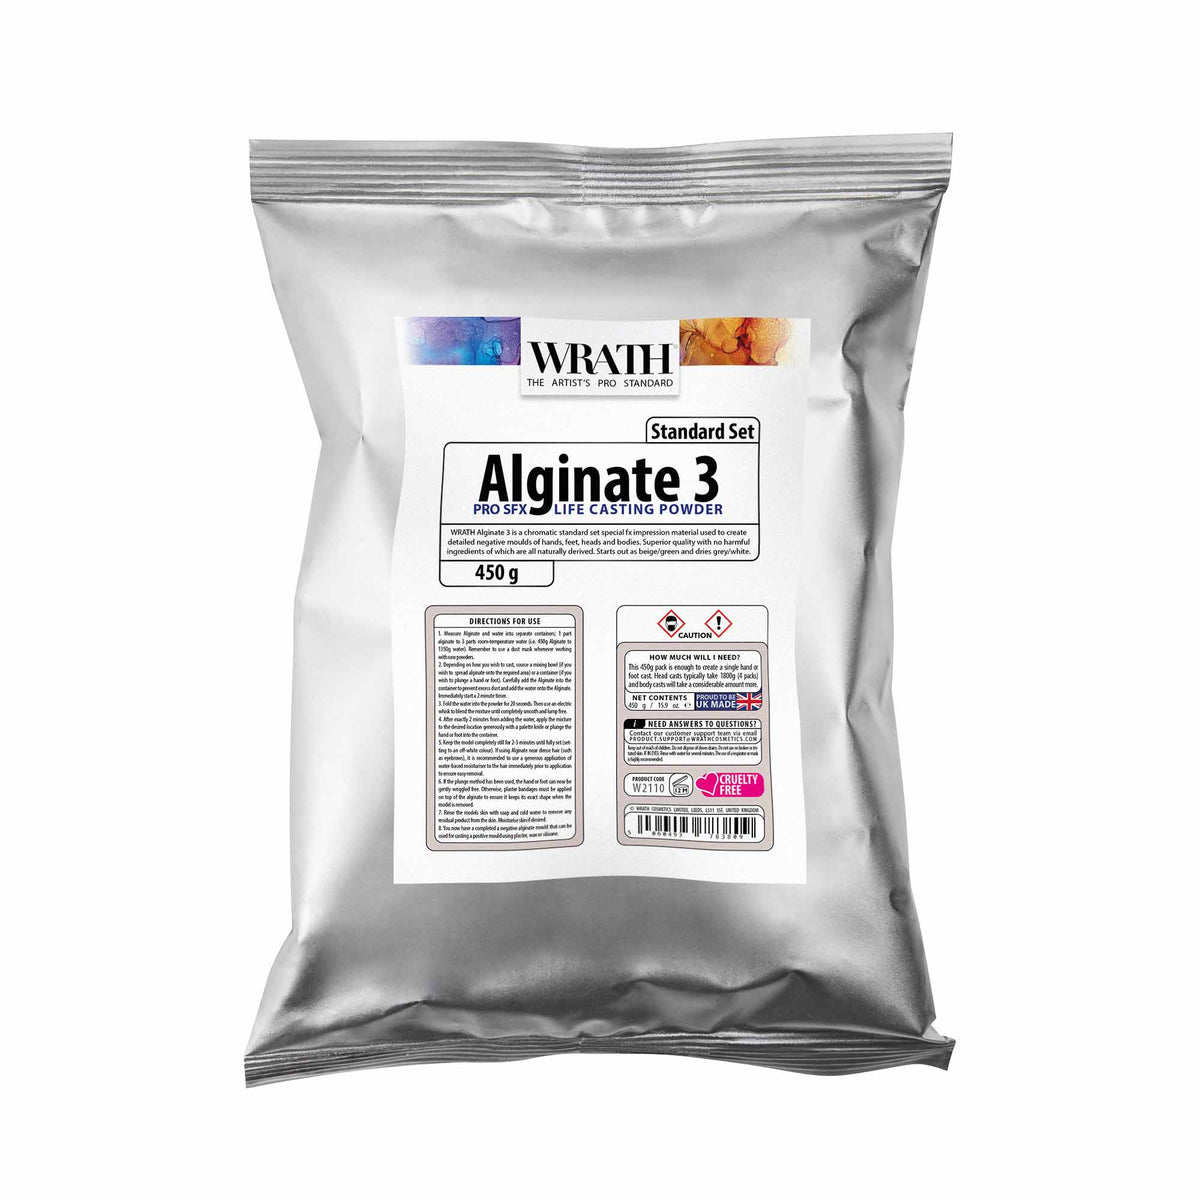 WRATH Alginate 3 - Life Casting Powder